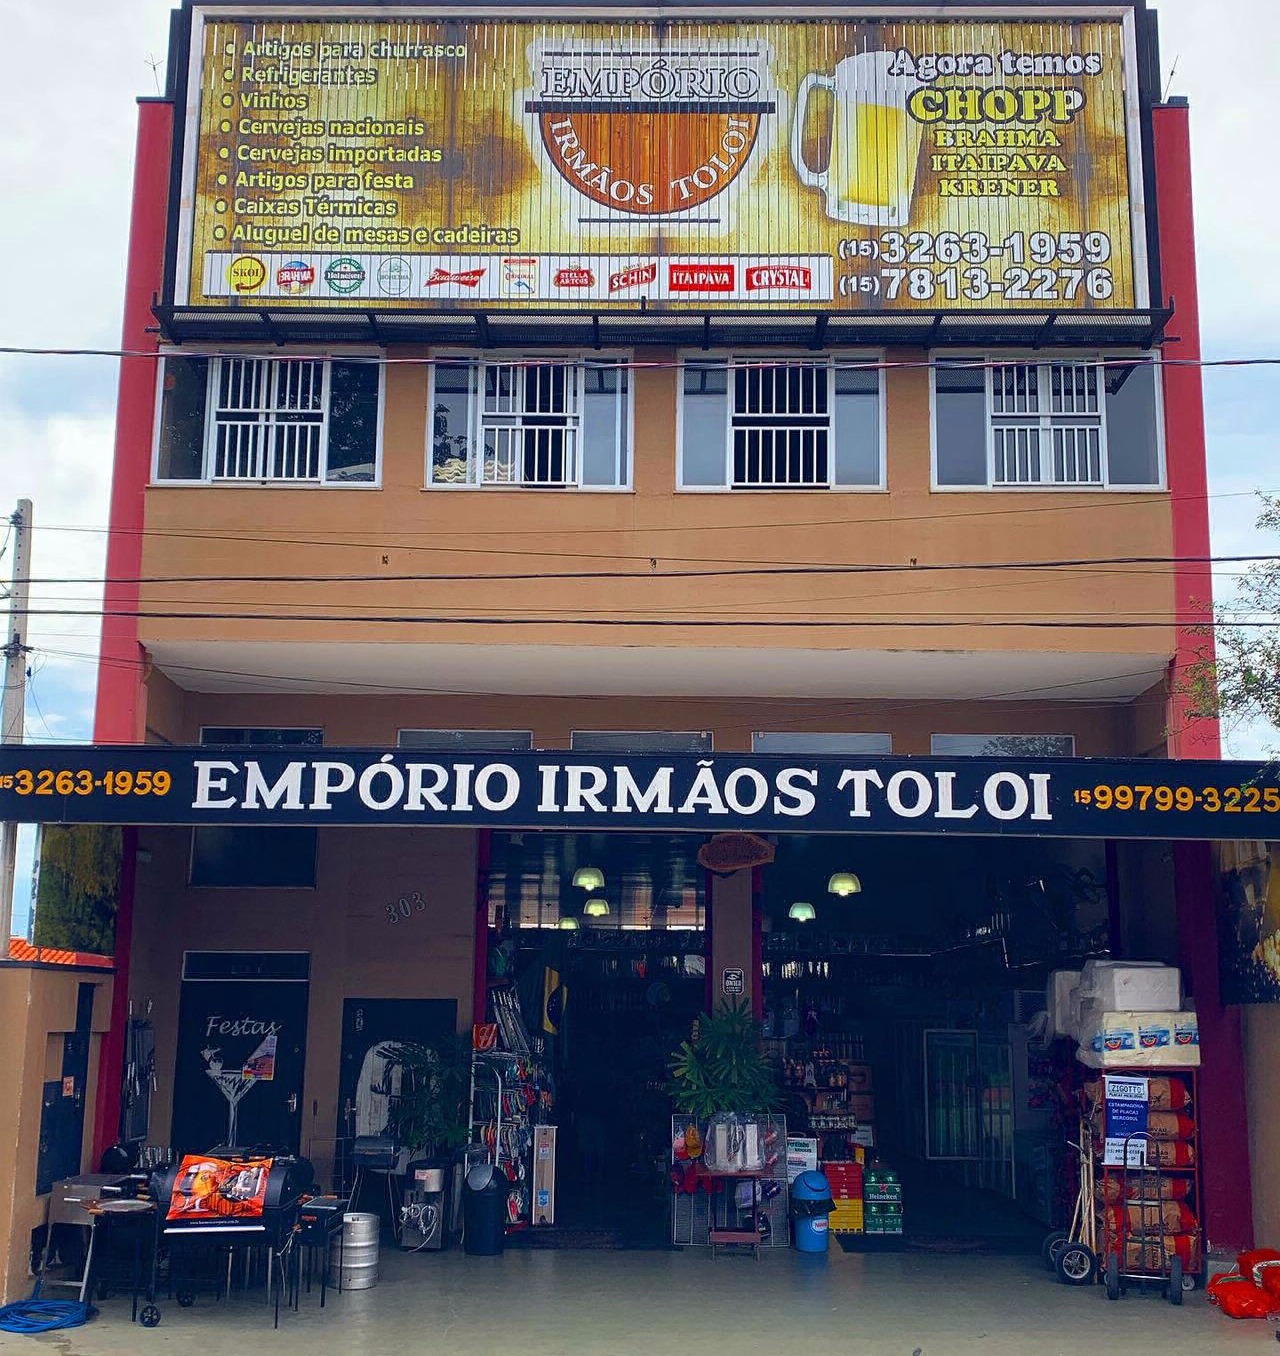 EMPÓRIO IRMÃO TOLOI